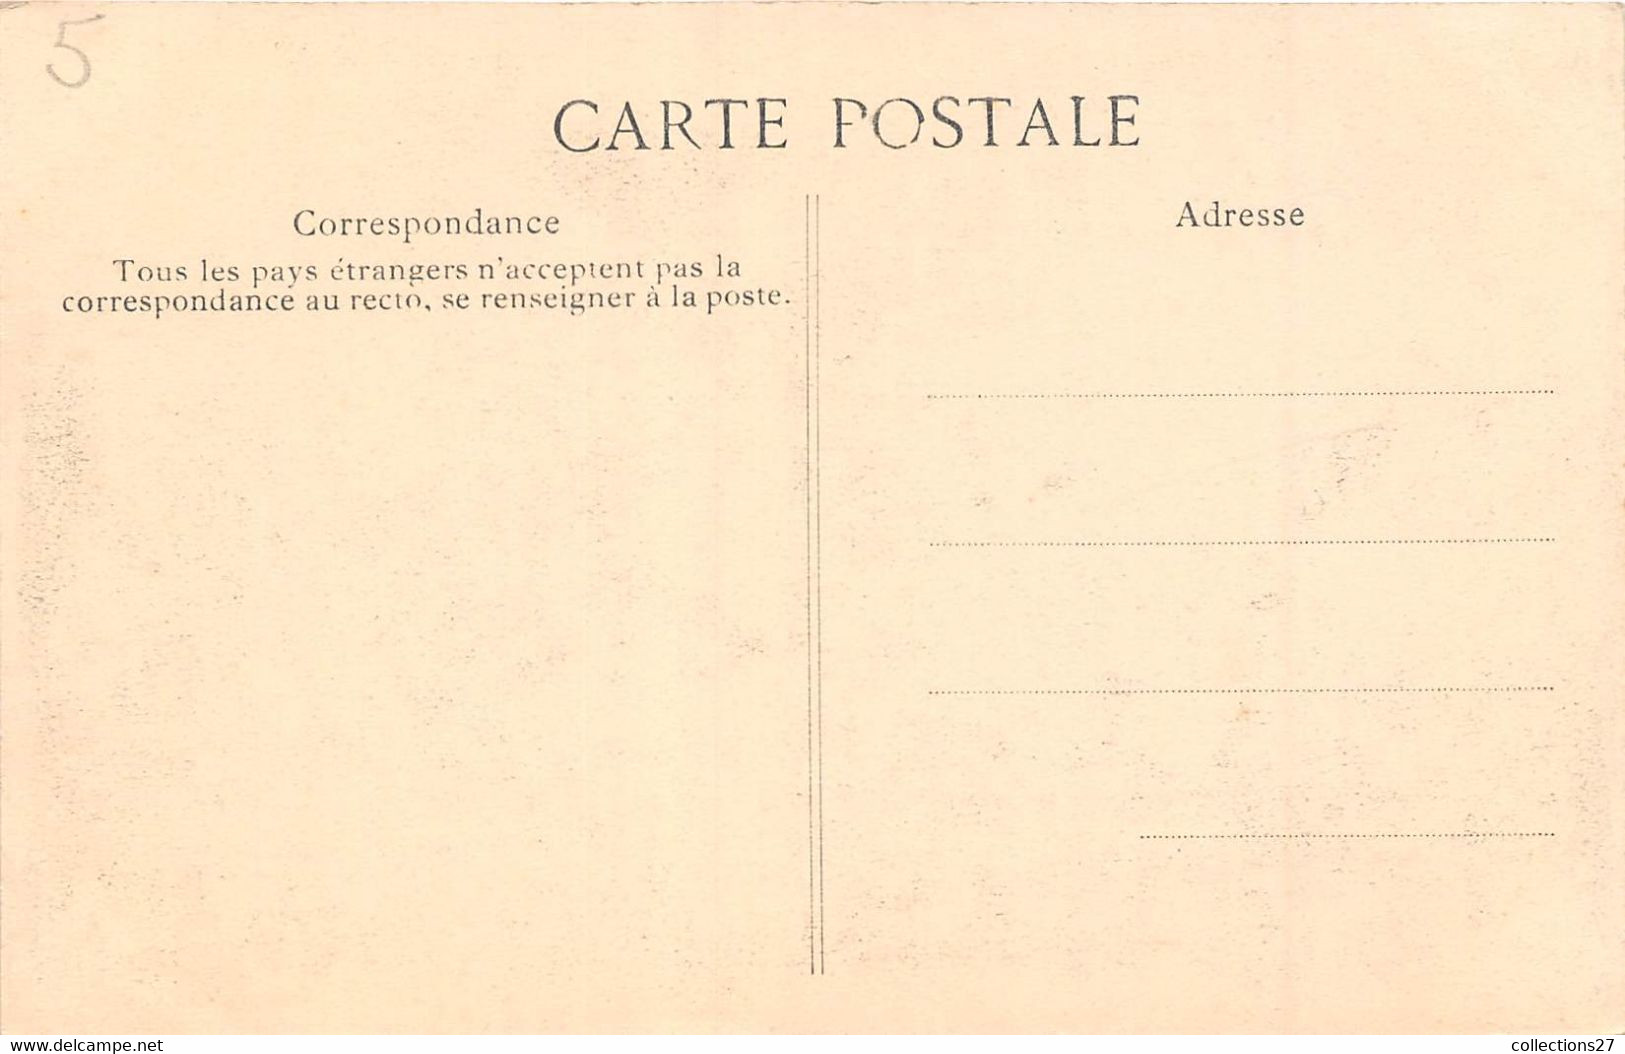 PARIS- LOT DE 9 CARTES POSTALES- MI-CAREME 1908